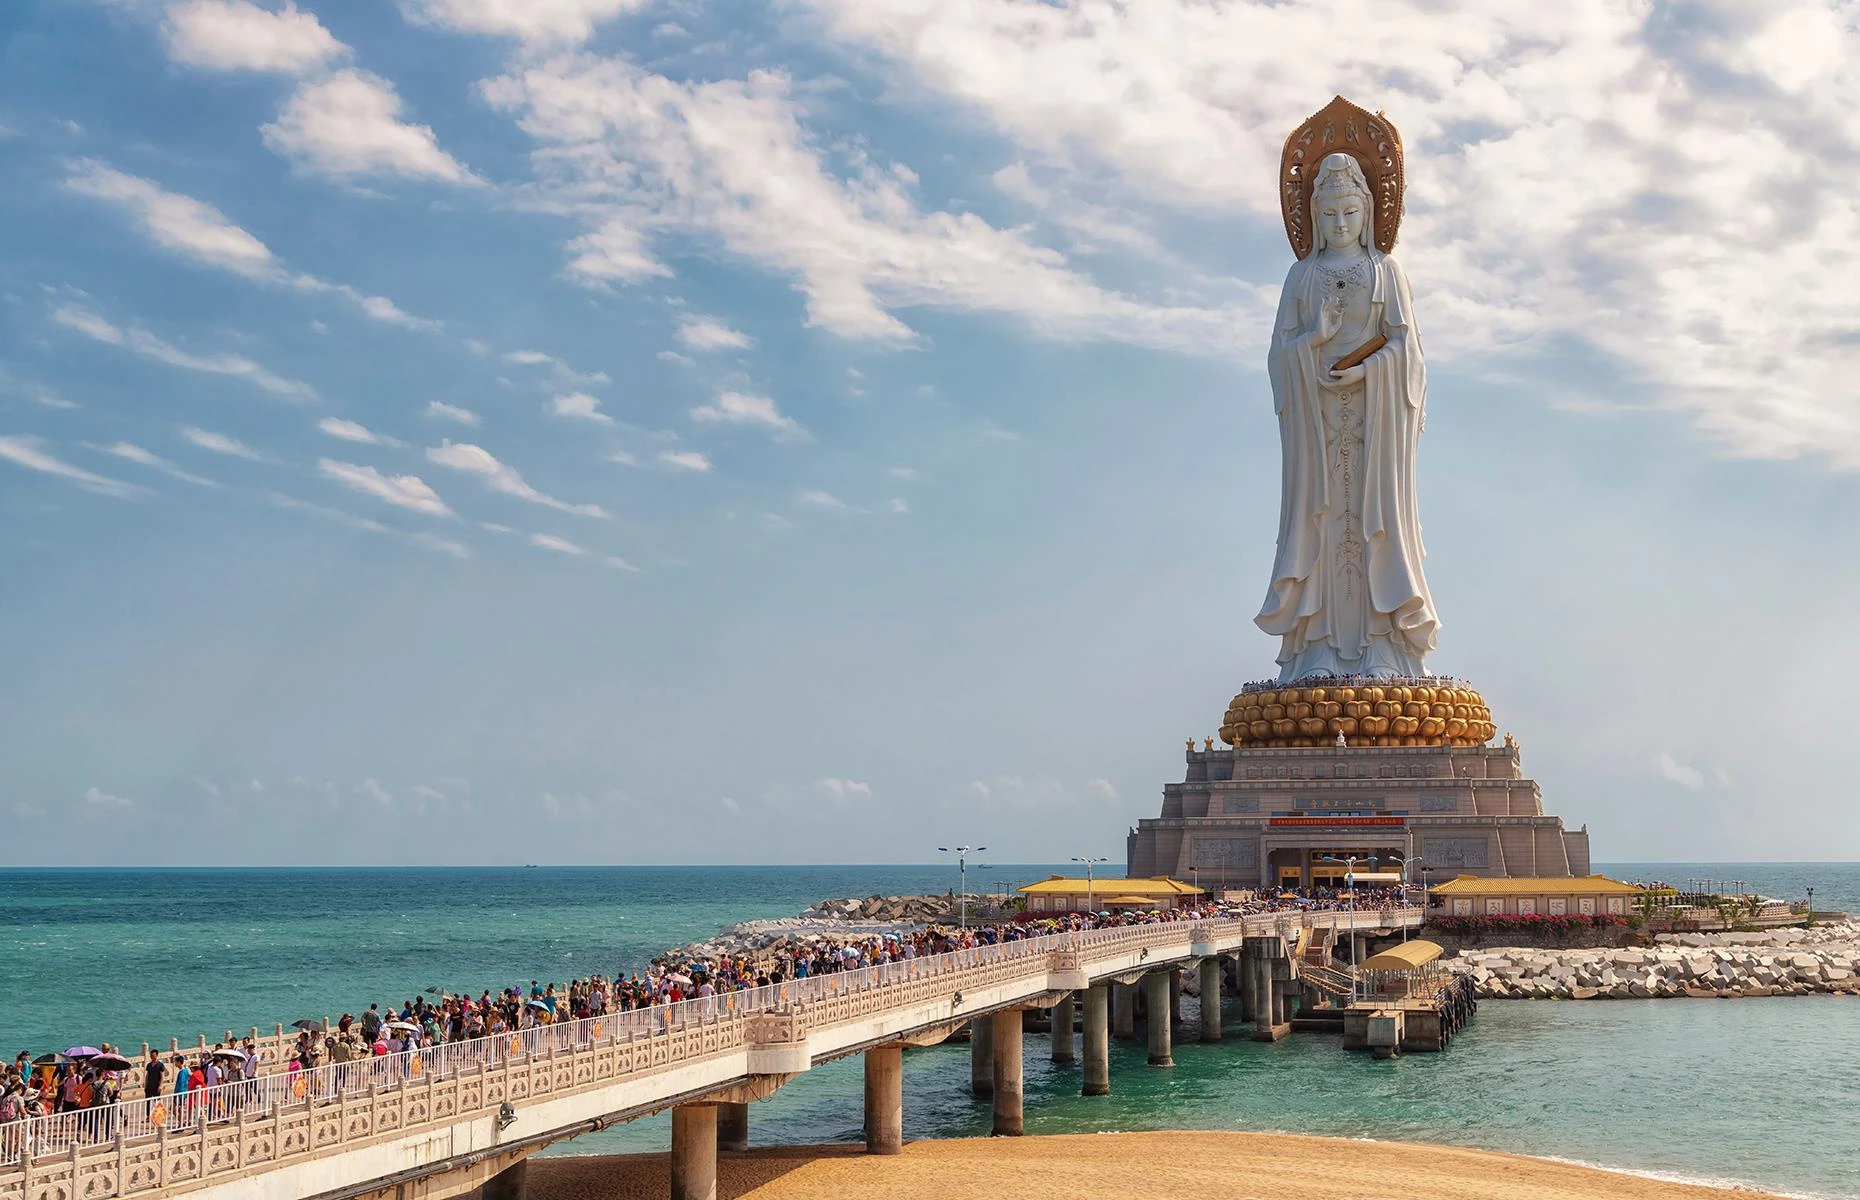 Guanyin of Nanshan, Tam Á, đảo Hải Nam, Trung Quốc: Tượng Phật Bà Quan Âm 108 m cao nhất thế giới có 3 mặt, một hướng vào đất liền và 2 mặt còn lại nhìn ra Biển Đông. Bức tượng mất 6 năm để xây dựng và được tôn trí vào năm 2005, với sự tham gia của 108 nhà sư và các tín đồ hành hương. Ảnh: Pisit Rapitpunt.